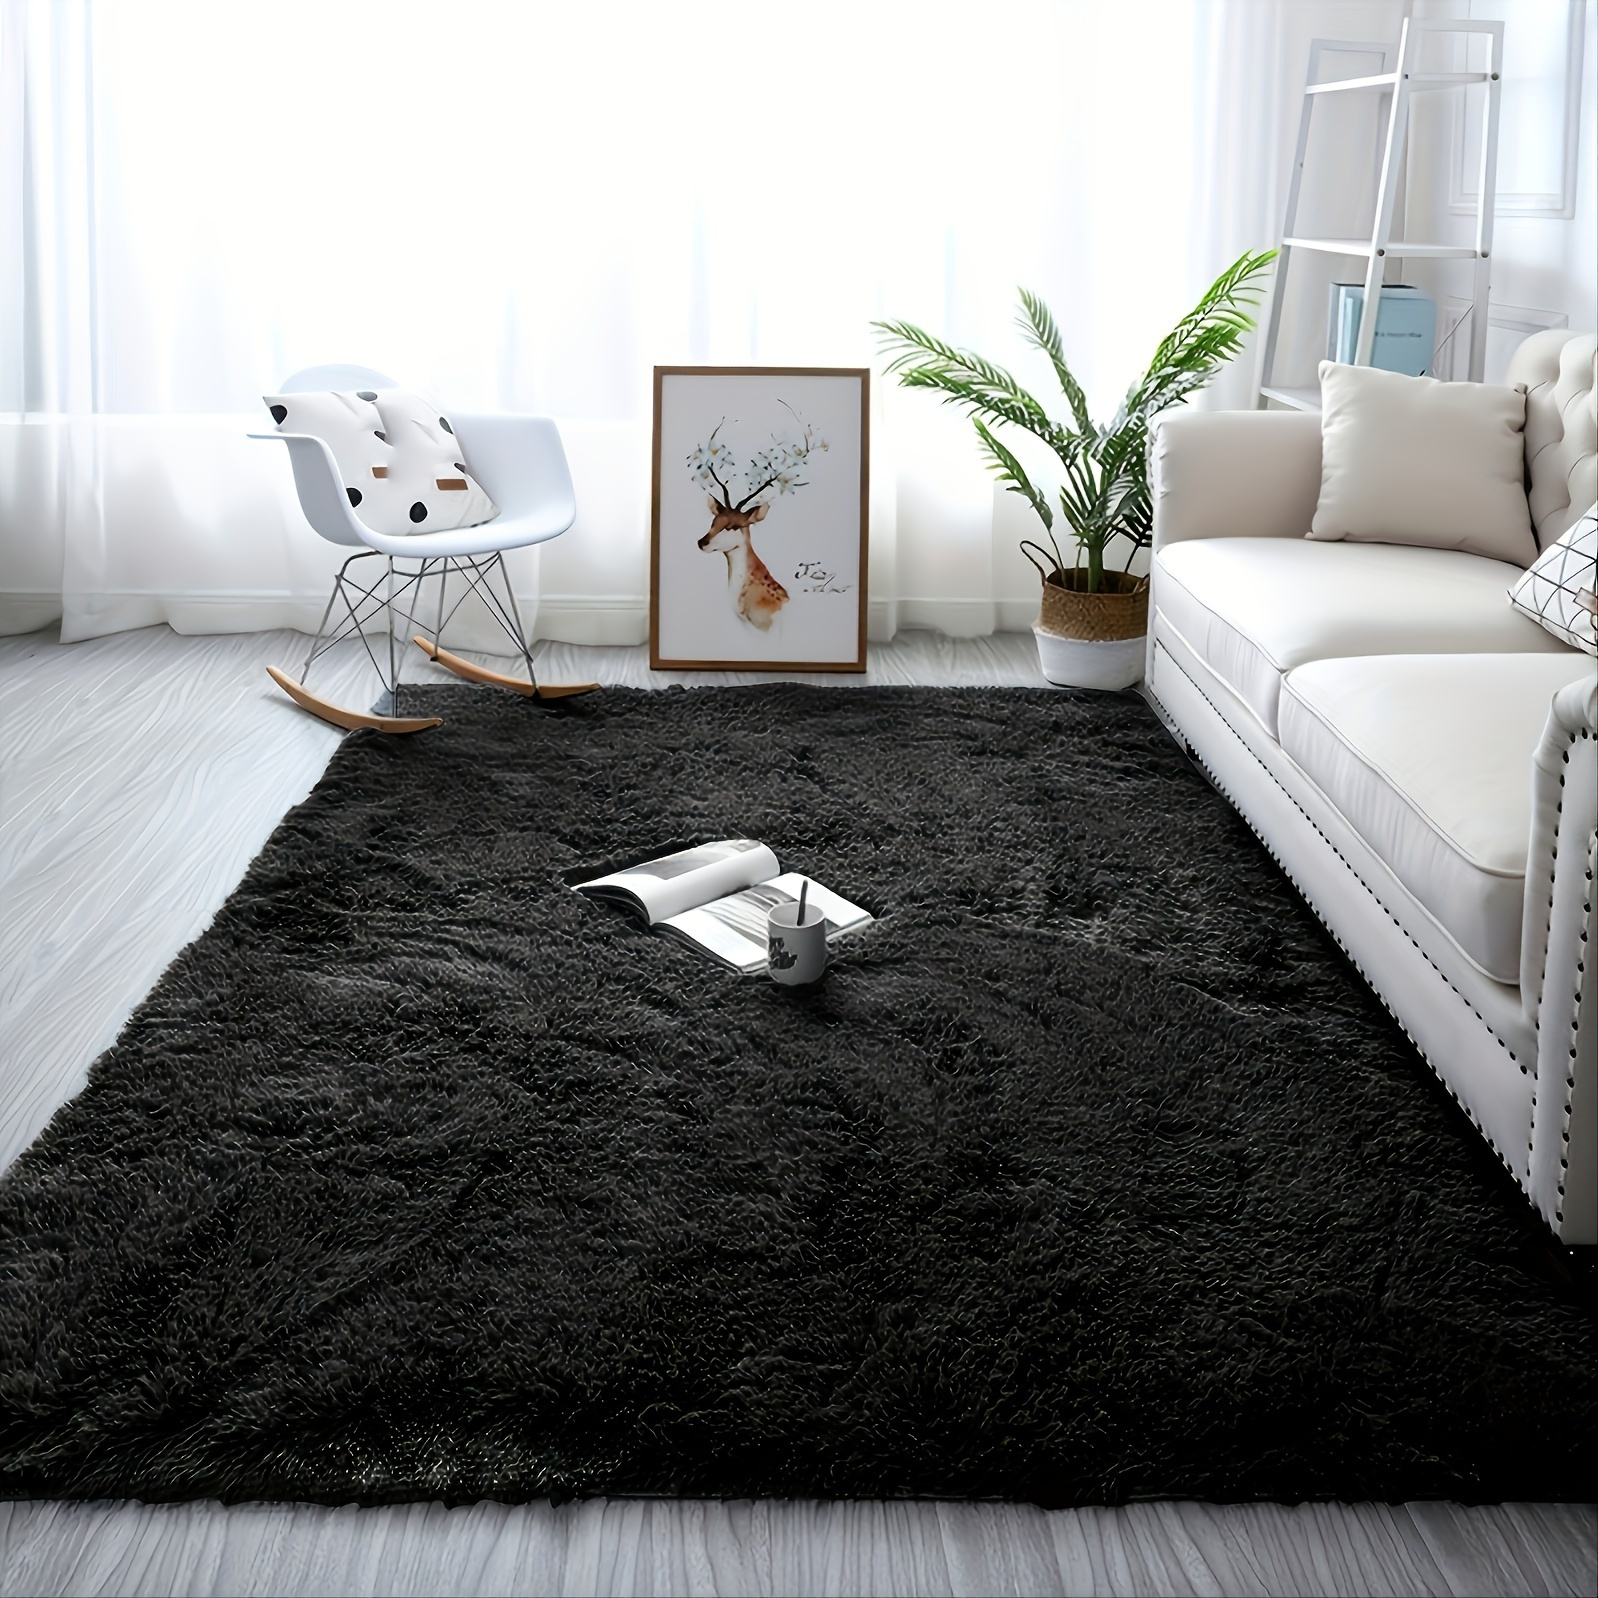 Alfombras grandes de área de 4 x 6 pies para sala de estar, alfombra  moderna súper suave y esponjosa, alfombra de interior teñida gris oscuro